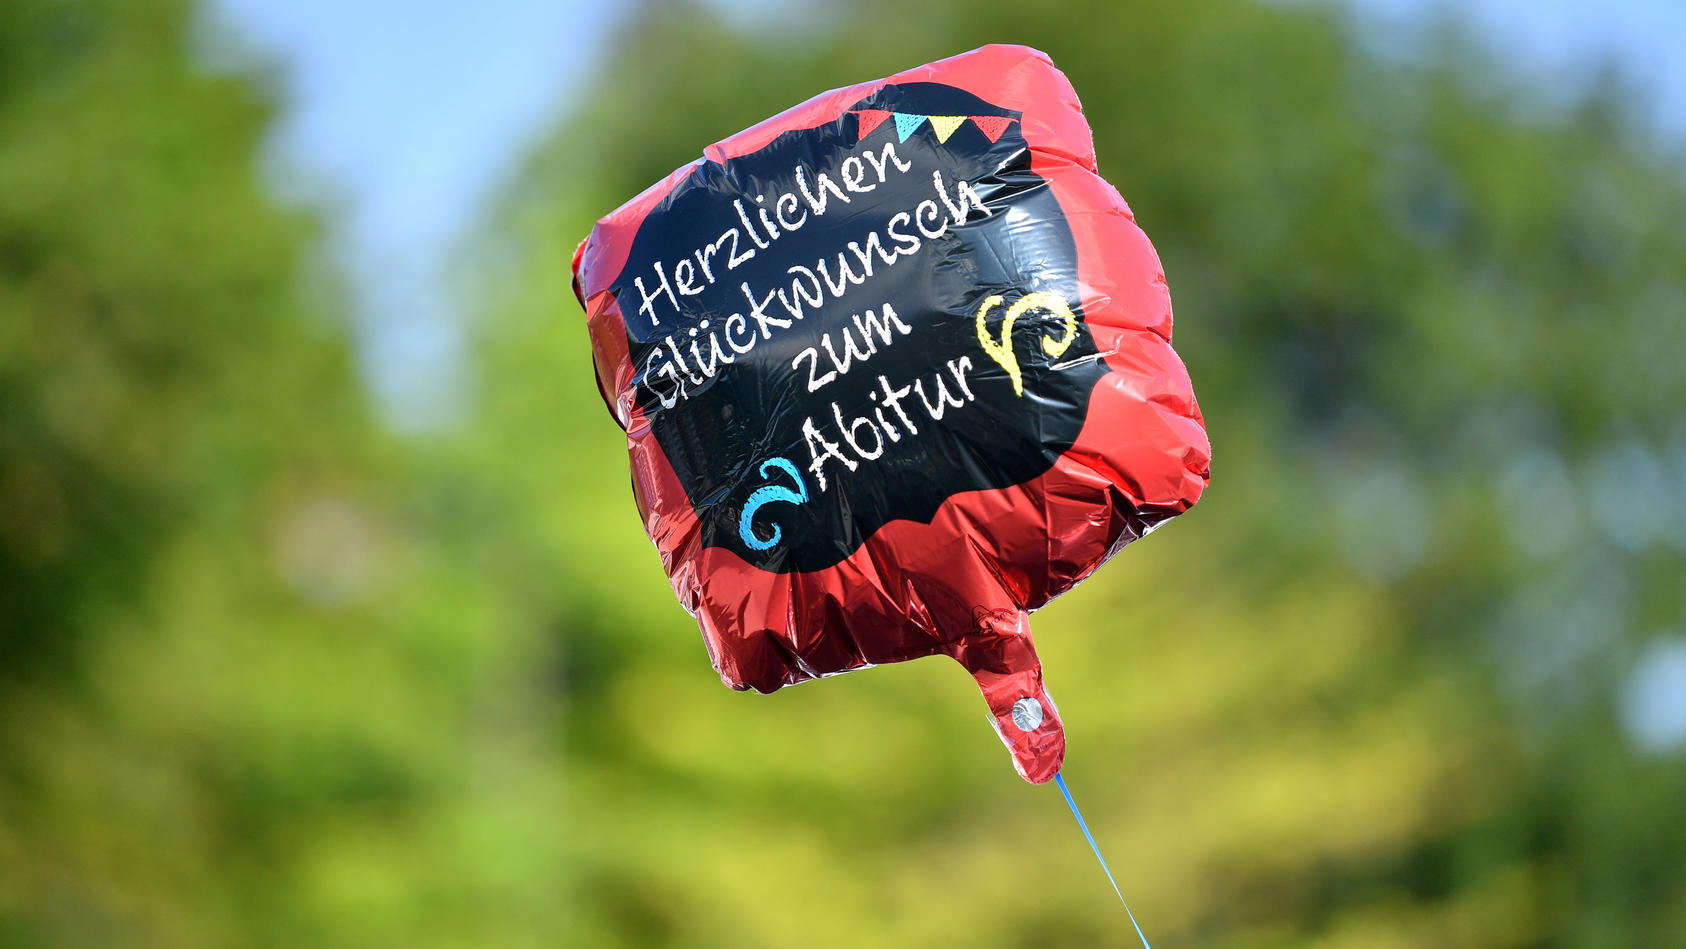 ARCHIV - 11.07.2020, Thüringen, Apolda: «Herzlichen Glückwunsch zum Abitur» steht auf einem Gasballon. (zu dpa «Thüringer Abiturienten erhalten ihre Zeugnisse») Foto: Martin Schutt/dpa-Zentralbild/dpa +++ dpa-Bildfunk +++